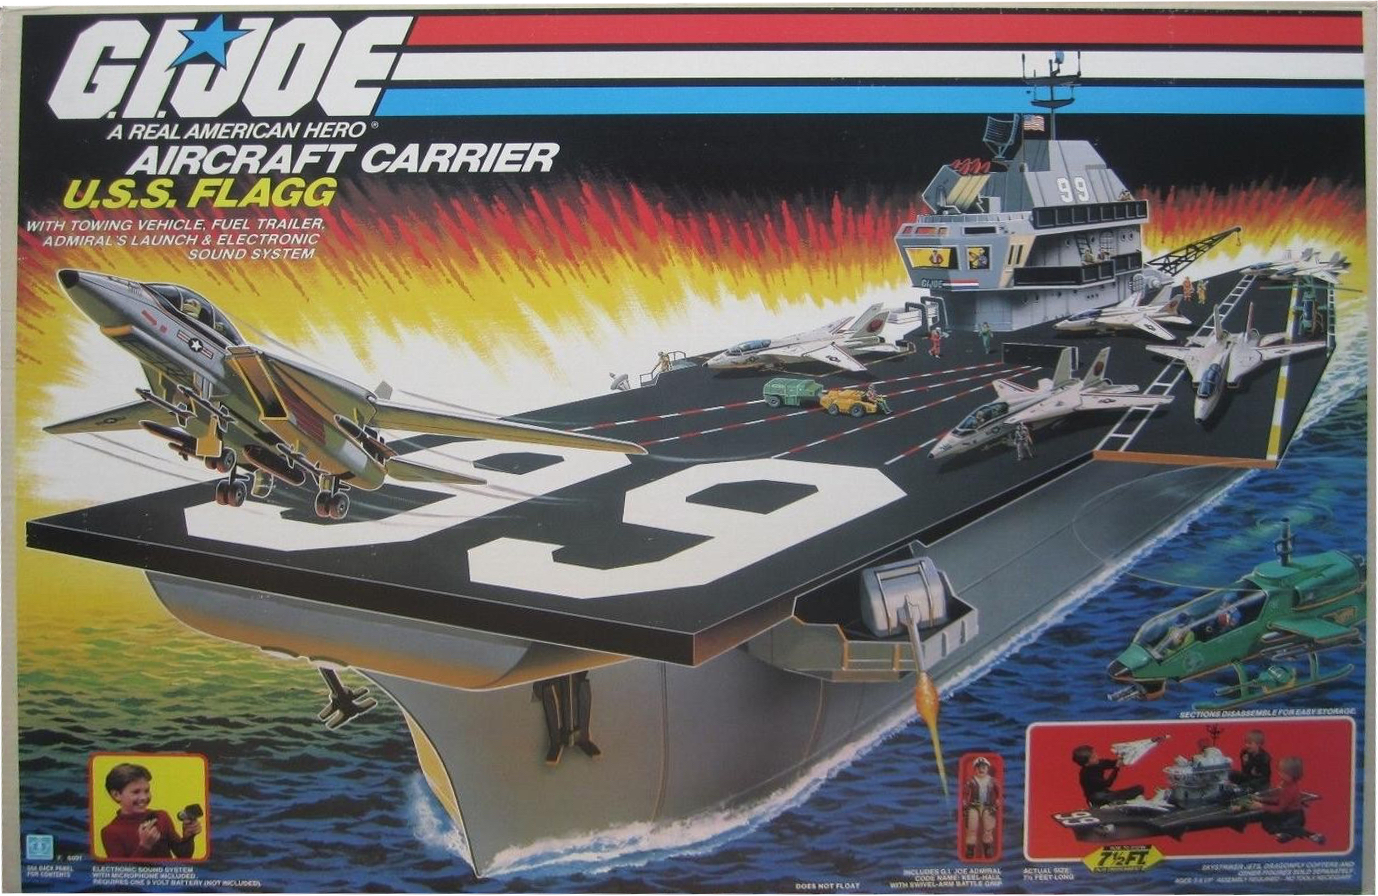 u-s-s-flagg-aircraft-carrier-2362.jpg